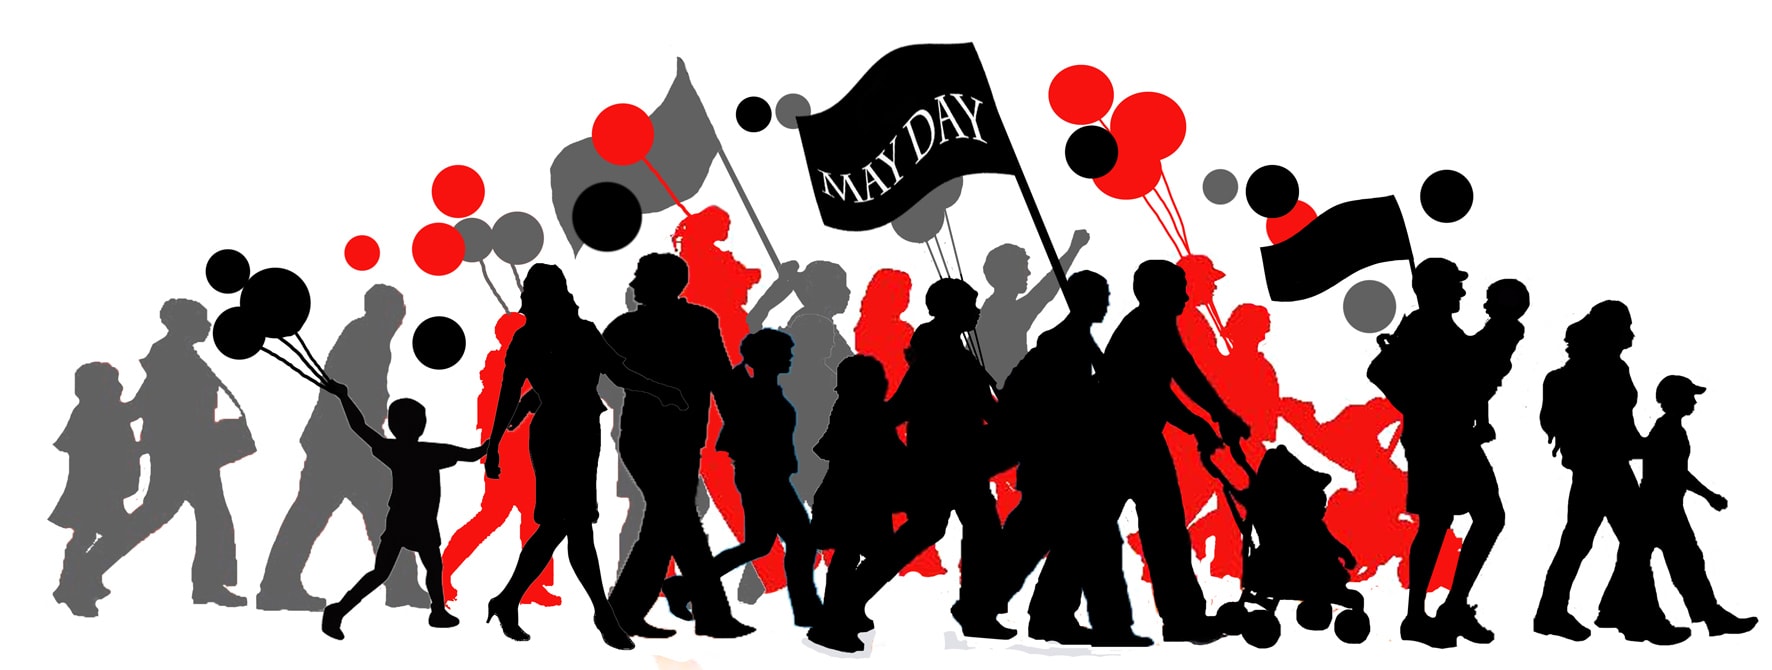 May Day Wallpaper